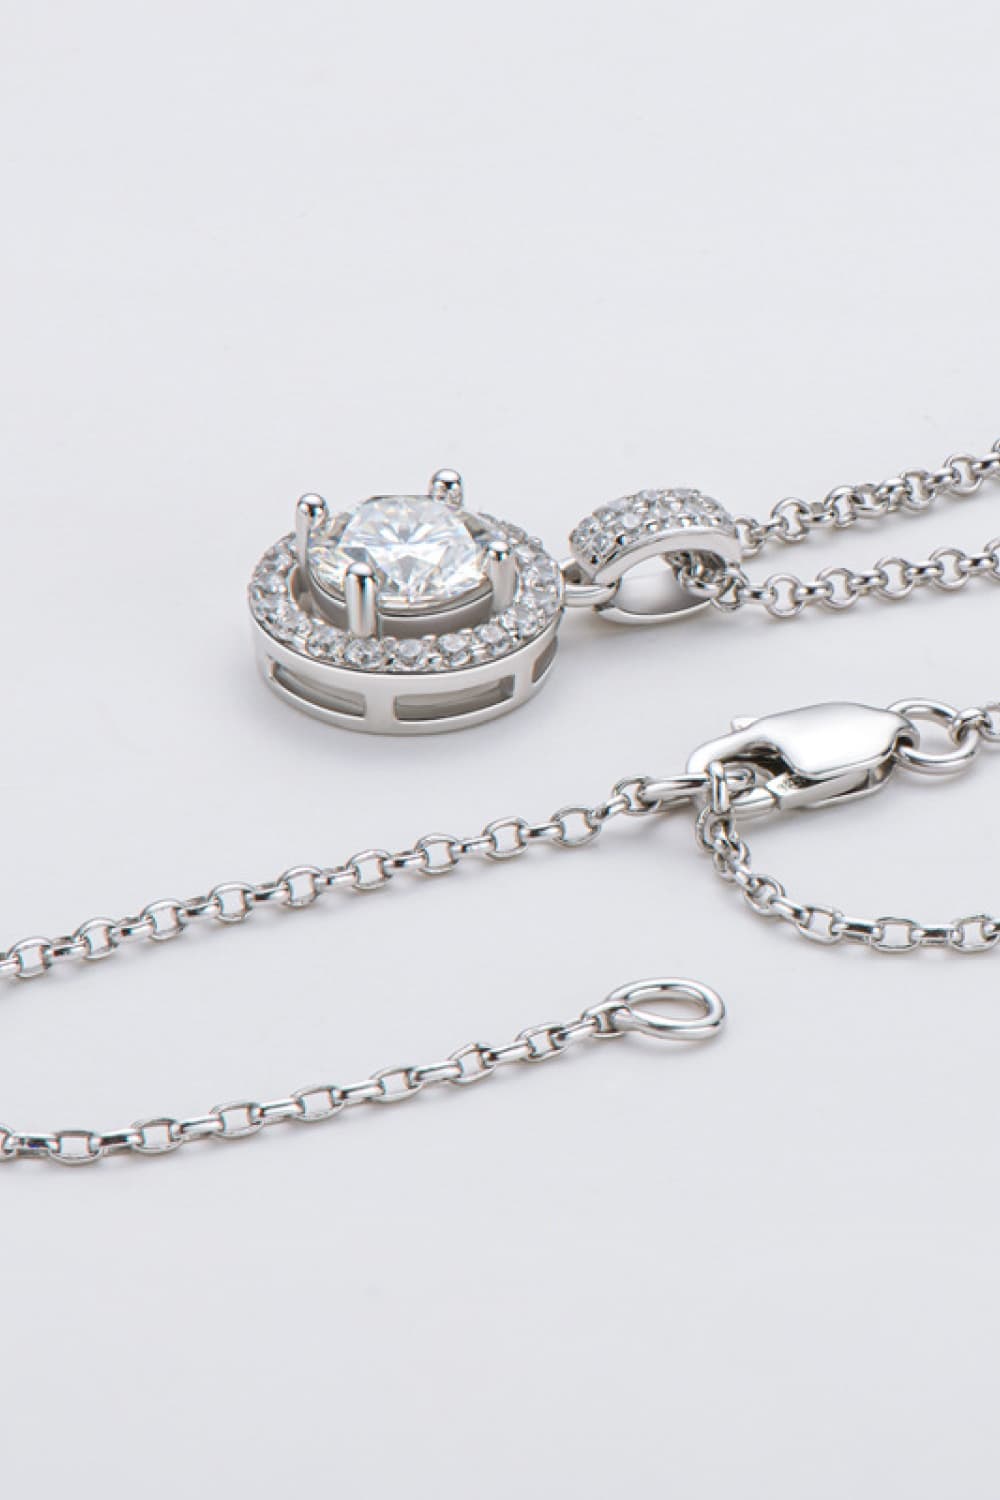 Zircon Pendant 925 Sterling Silver Necklace - KRE Prime Deals